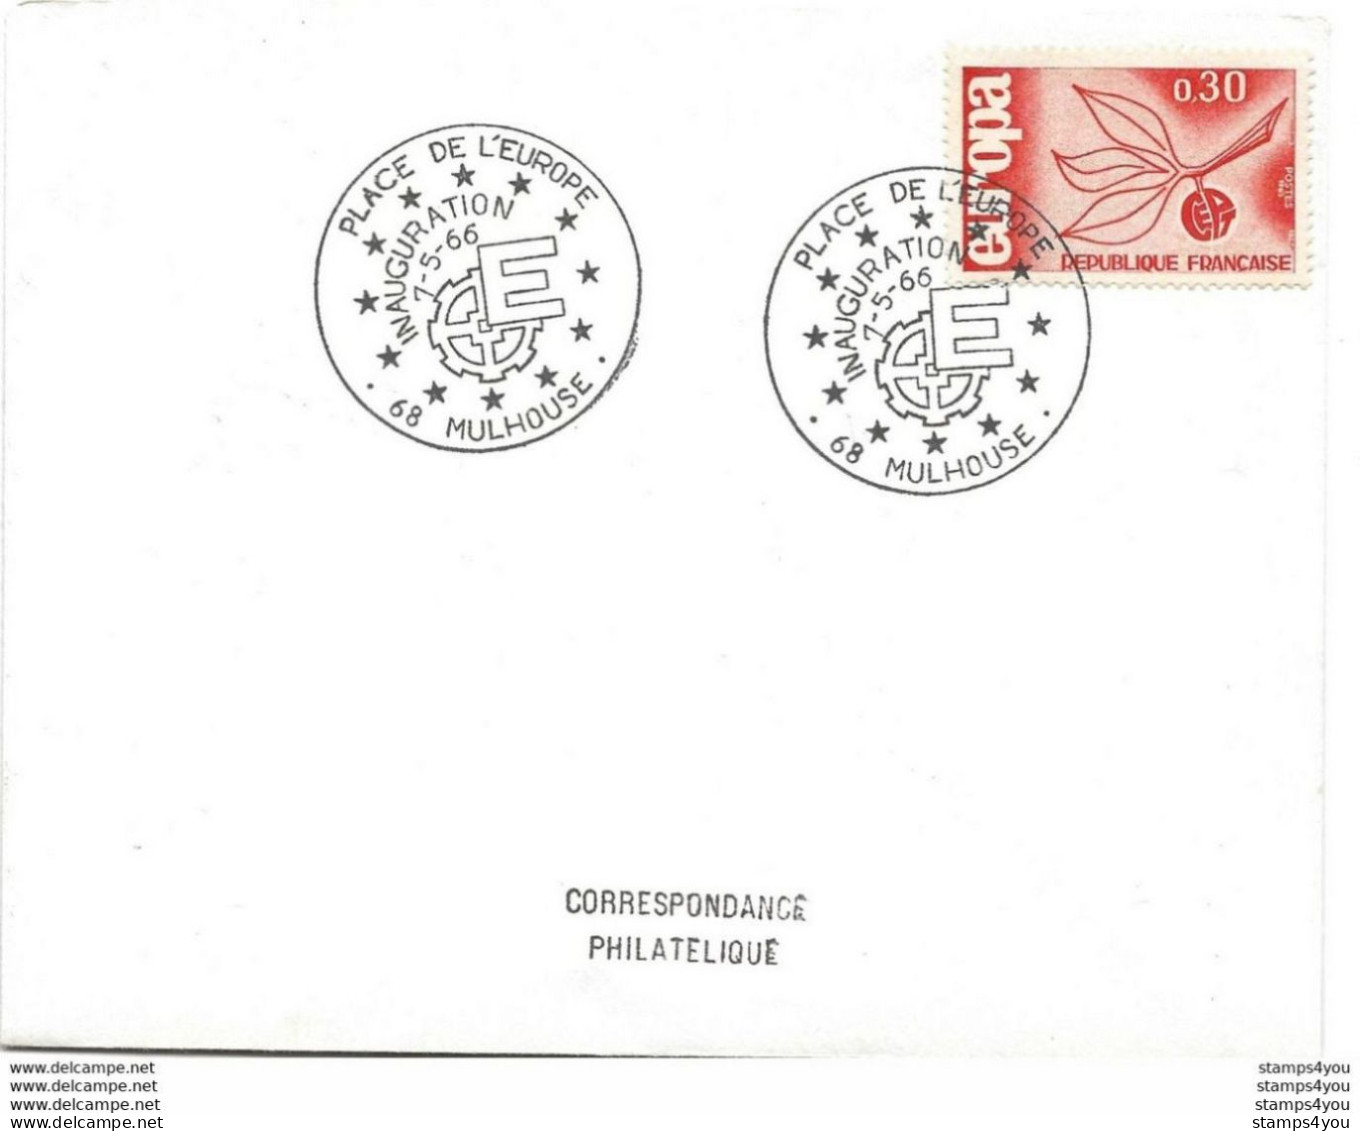 194 - 28 - Enveloppe Avec Timbre Europa Et Oblit Spéciale MUlhouse Inauguration Place De L'Europe 1966 - Europäischer Gedanke